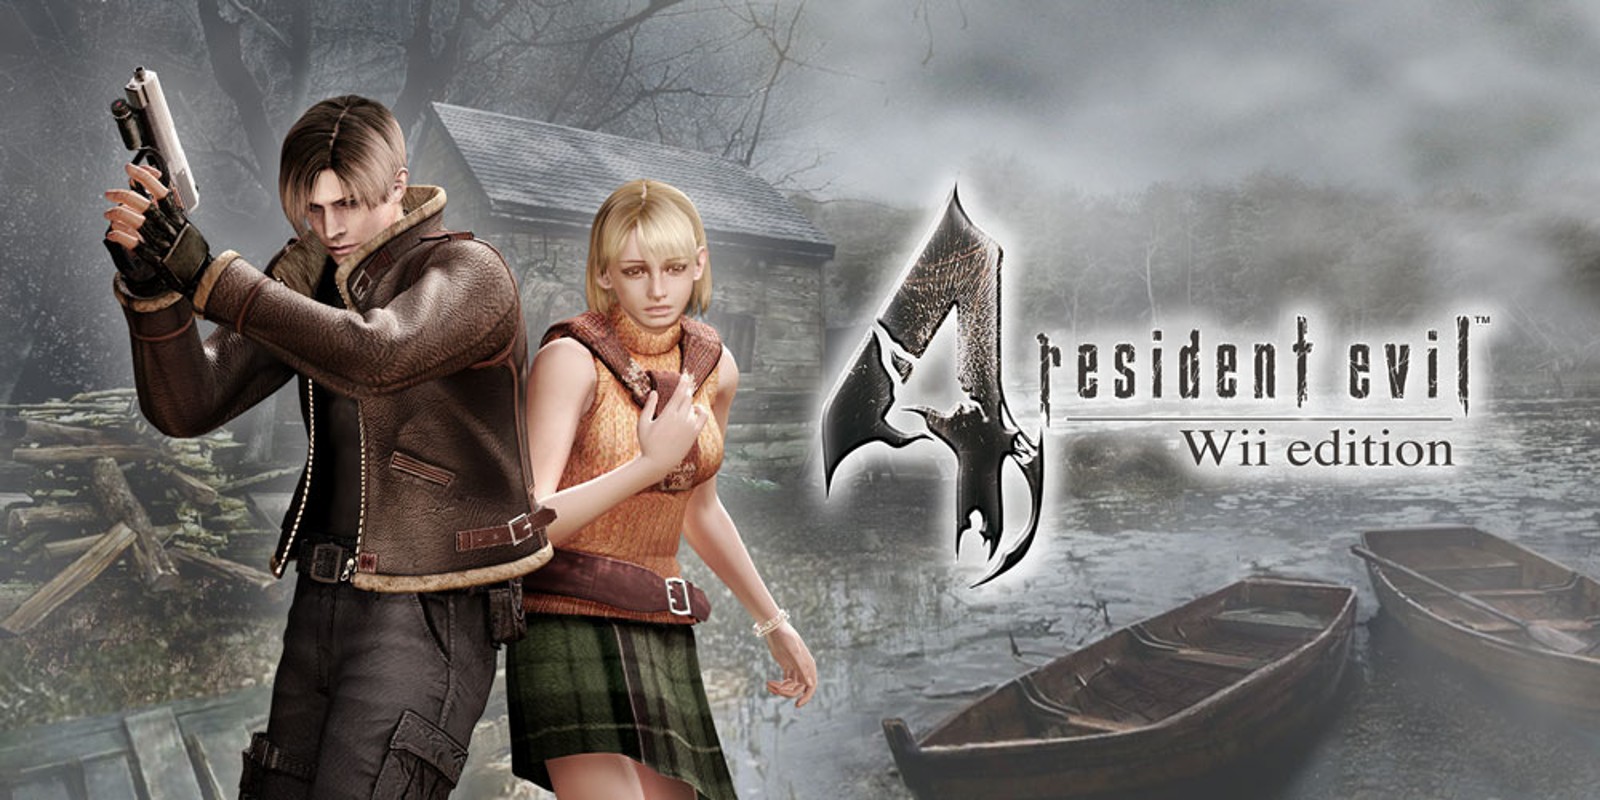 Прохождение игры Resident Evil 4 - Ultimate HD Edition # 32 (Русская версия игры) PC - Ver. HD Full.